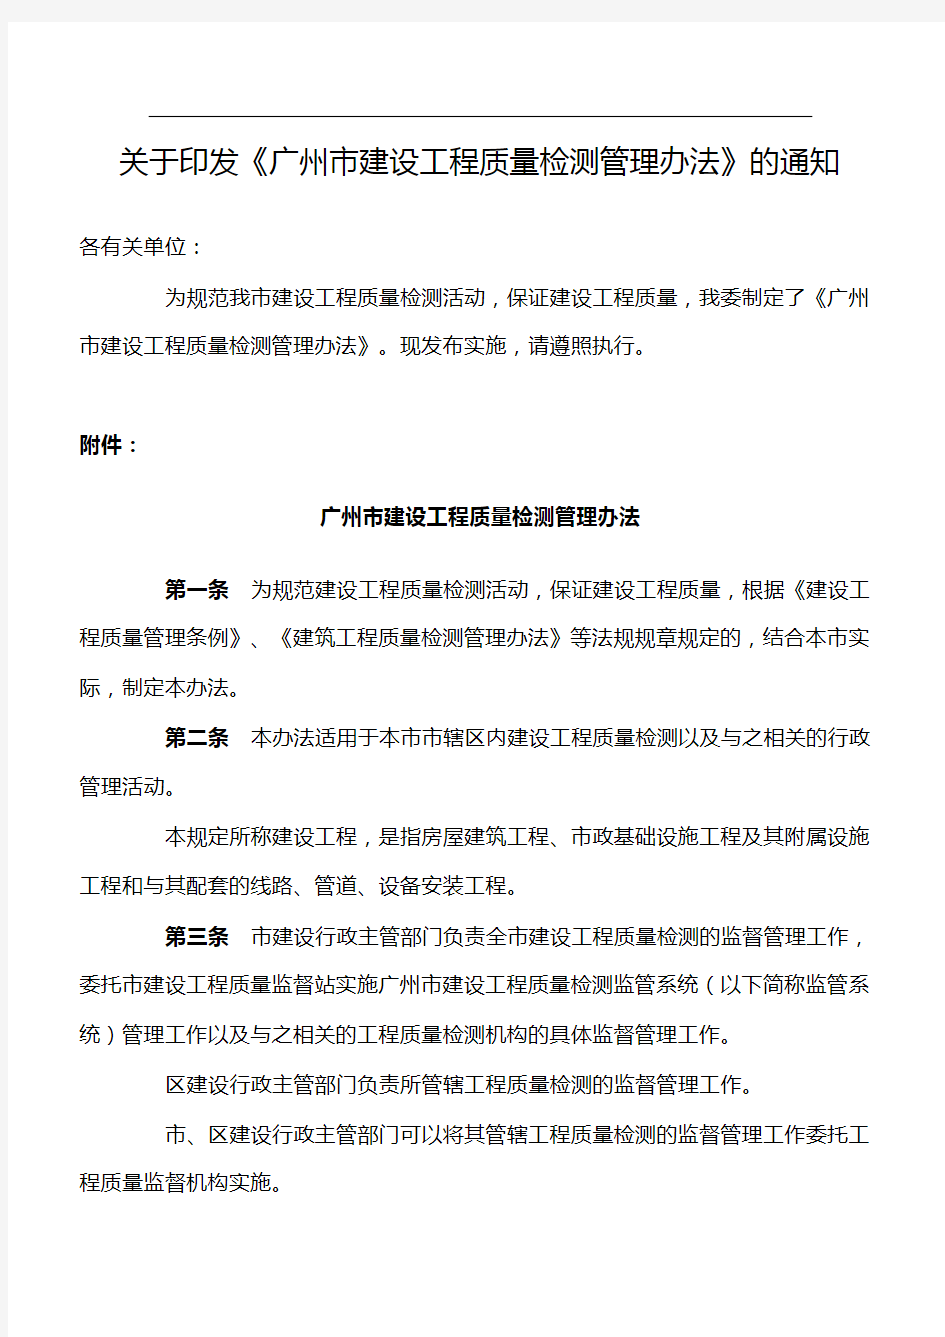 《广州市建设工程质量检测管理办法》